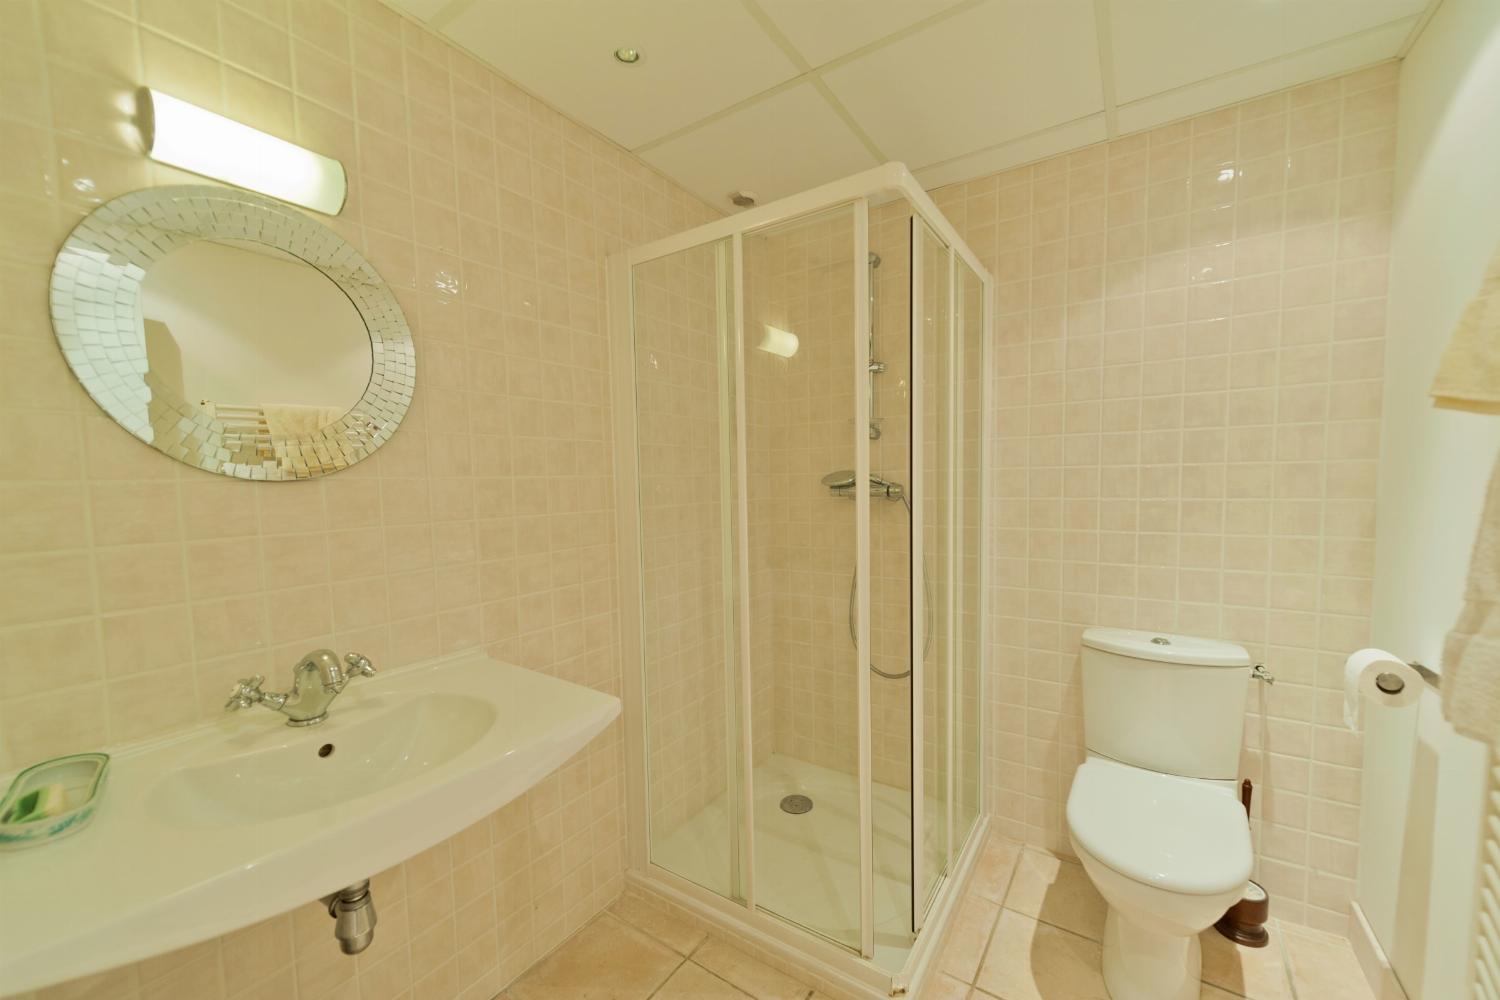 Salle de bain | Location de vacances dans le Gers